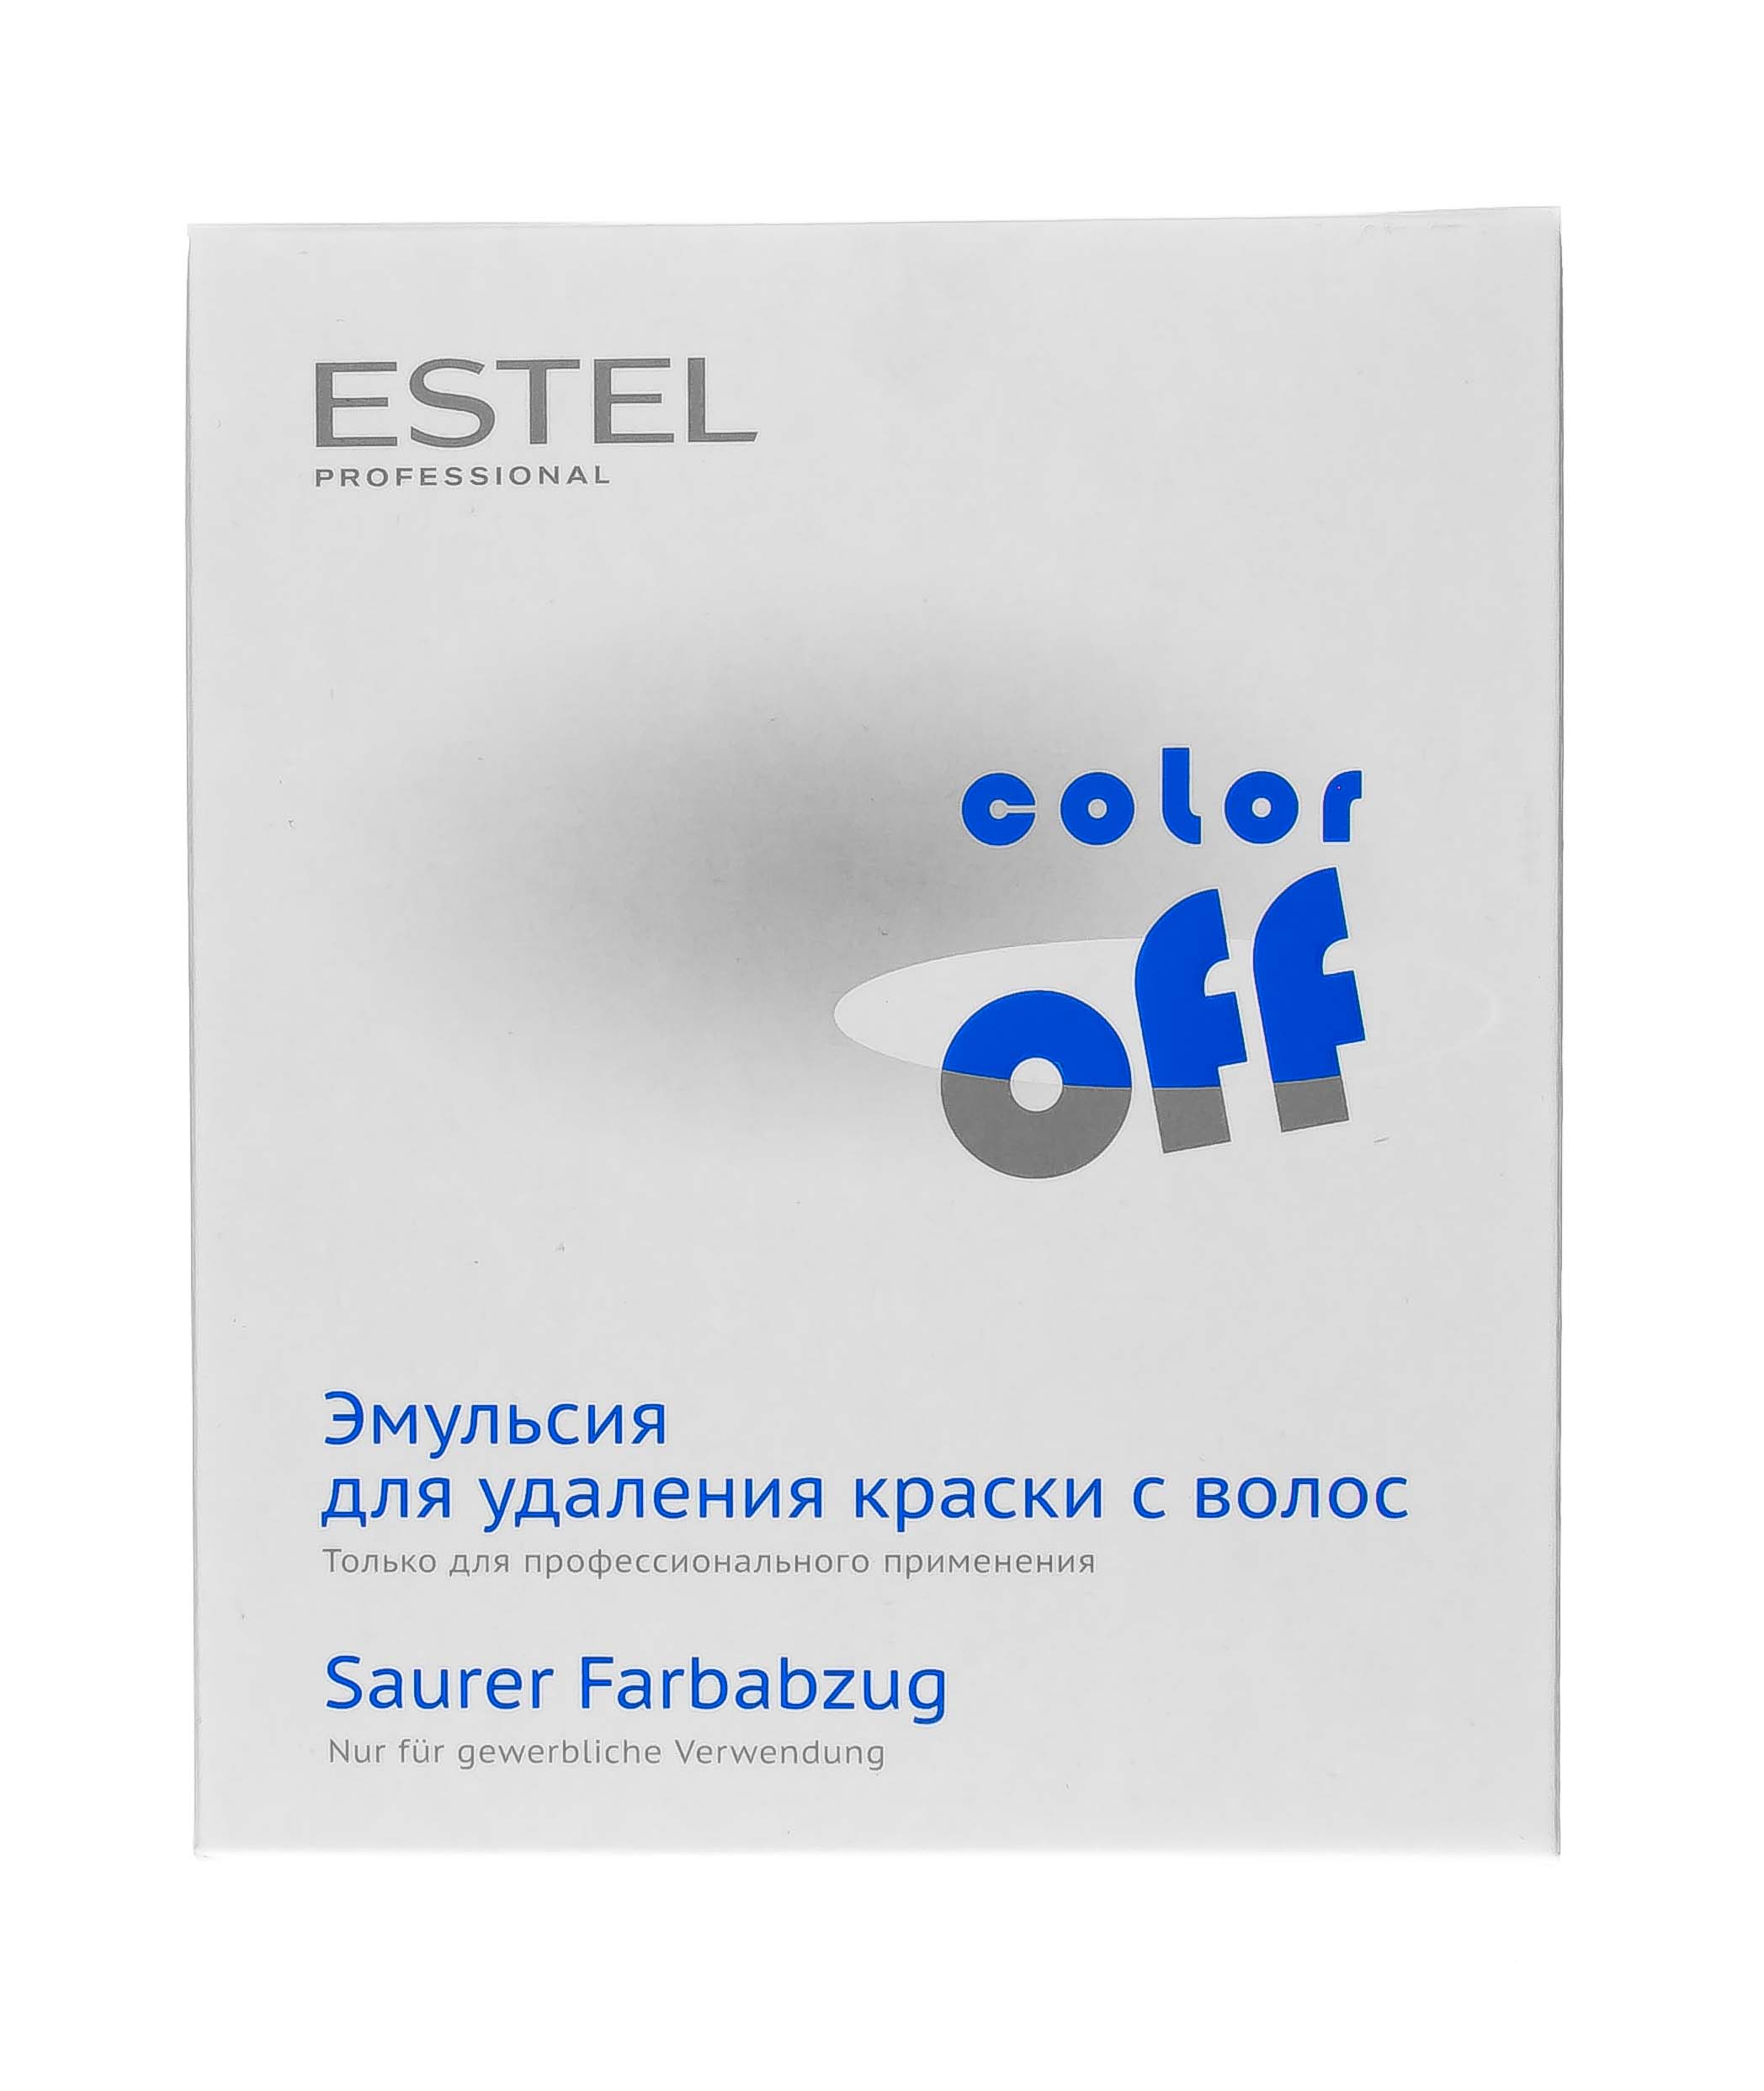 Estel Эмульсия для удаления краски с волос, 3 флакона по 120мл (Estel, Color Off)